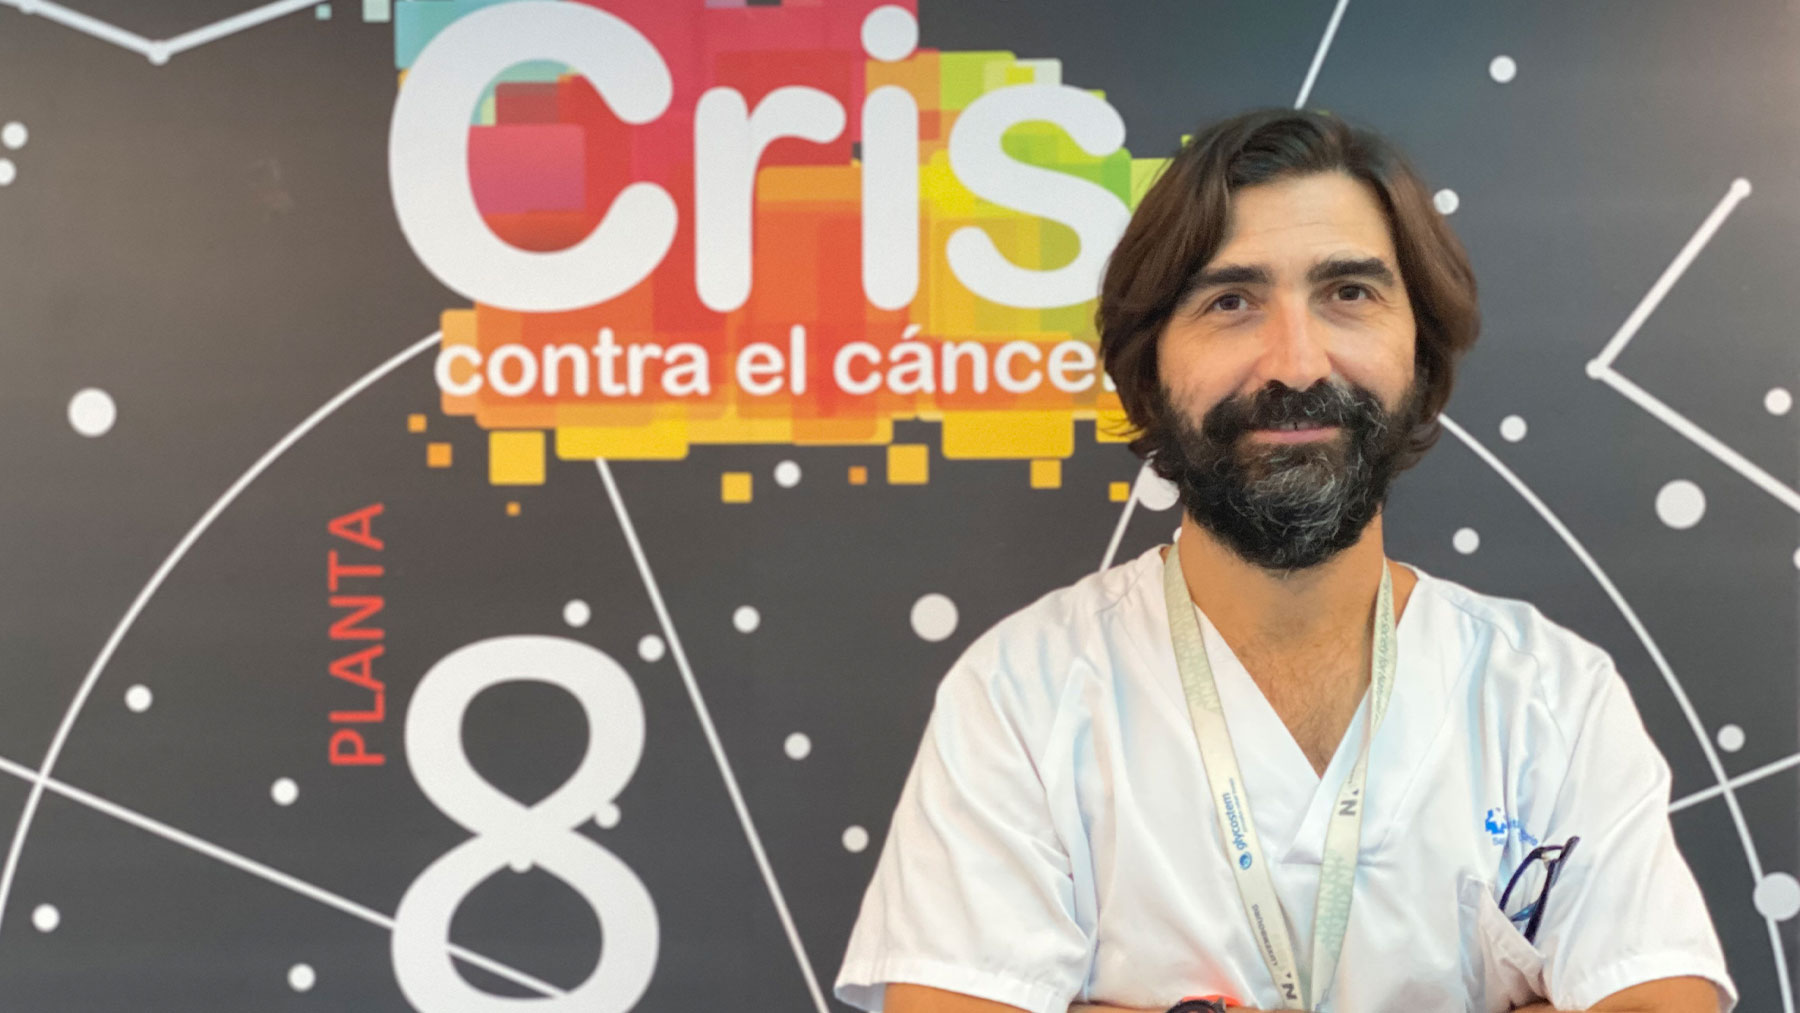 «En España sólo hay 8 centros integrales que atienden el cáncer infantil para los 1.200 que enferman cada año», afirma.